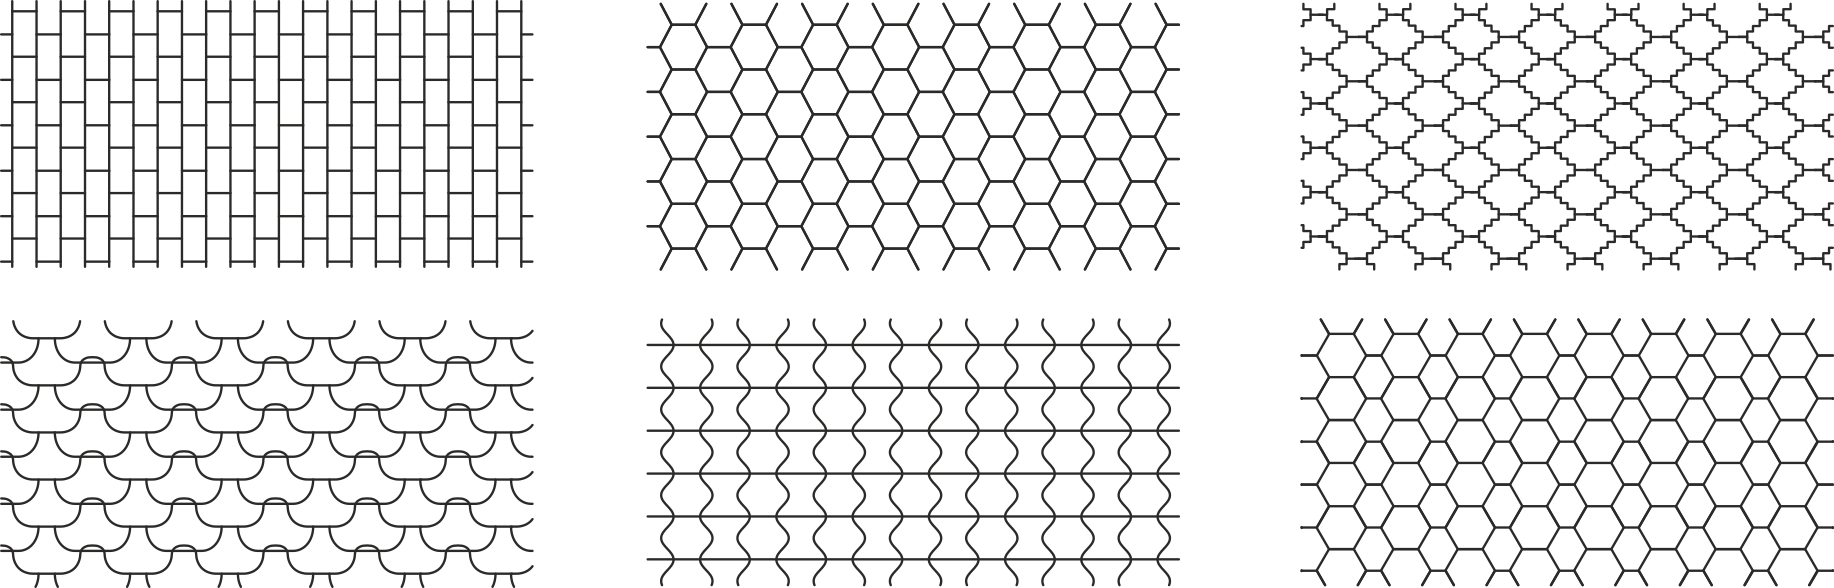 Eksempler på cellestrukturer i honeycomb